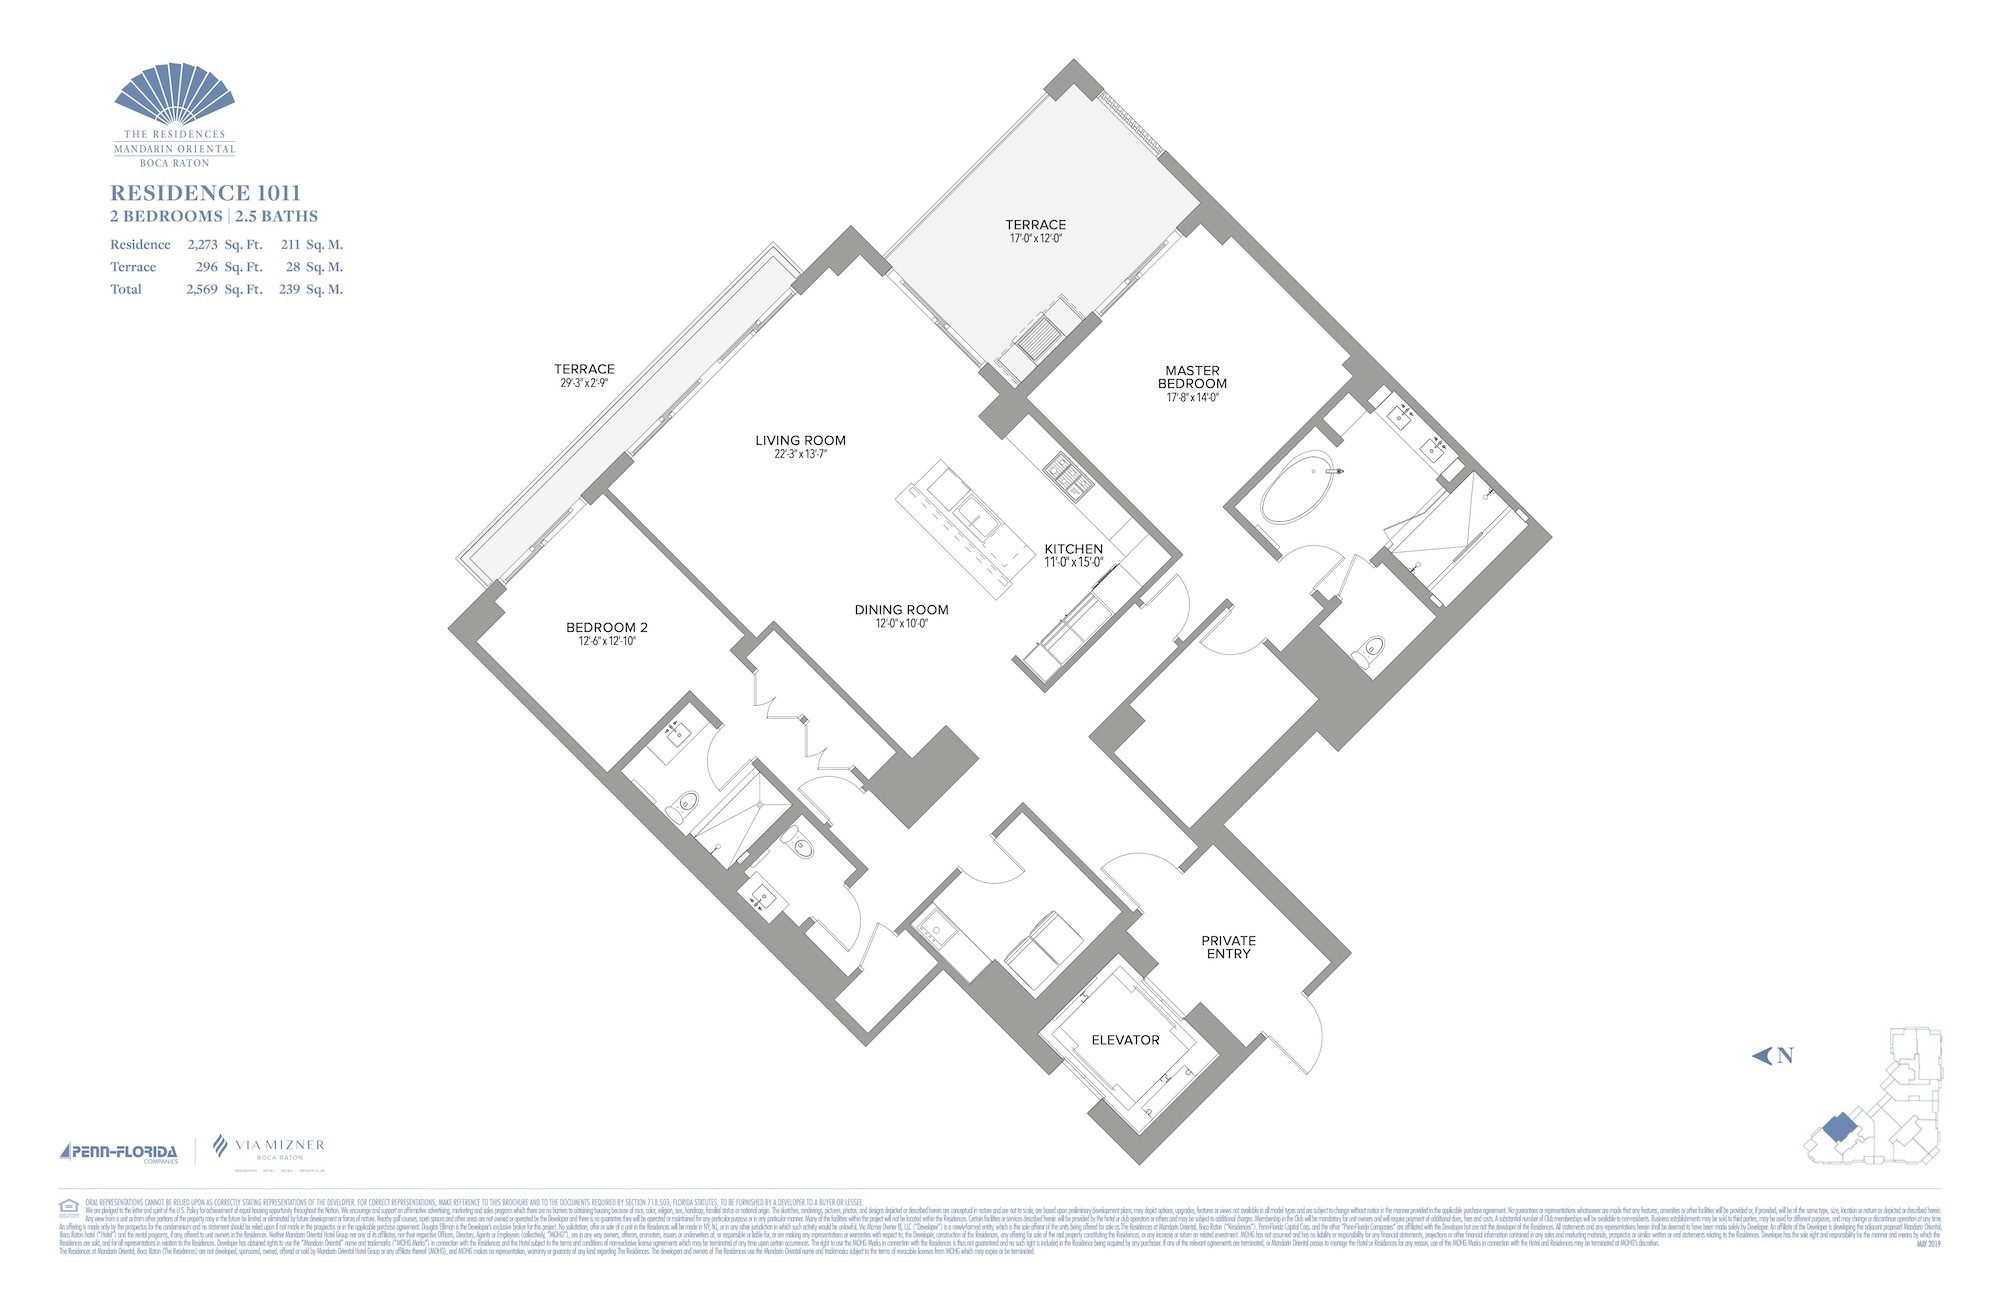 Floor Plan for Residence at Mandarin Oriental Floorplans, Residence 1011